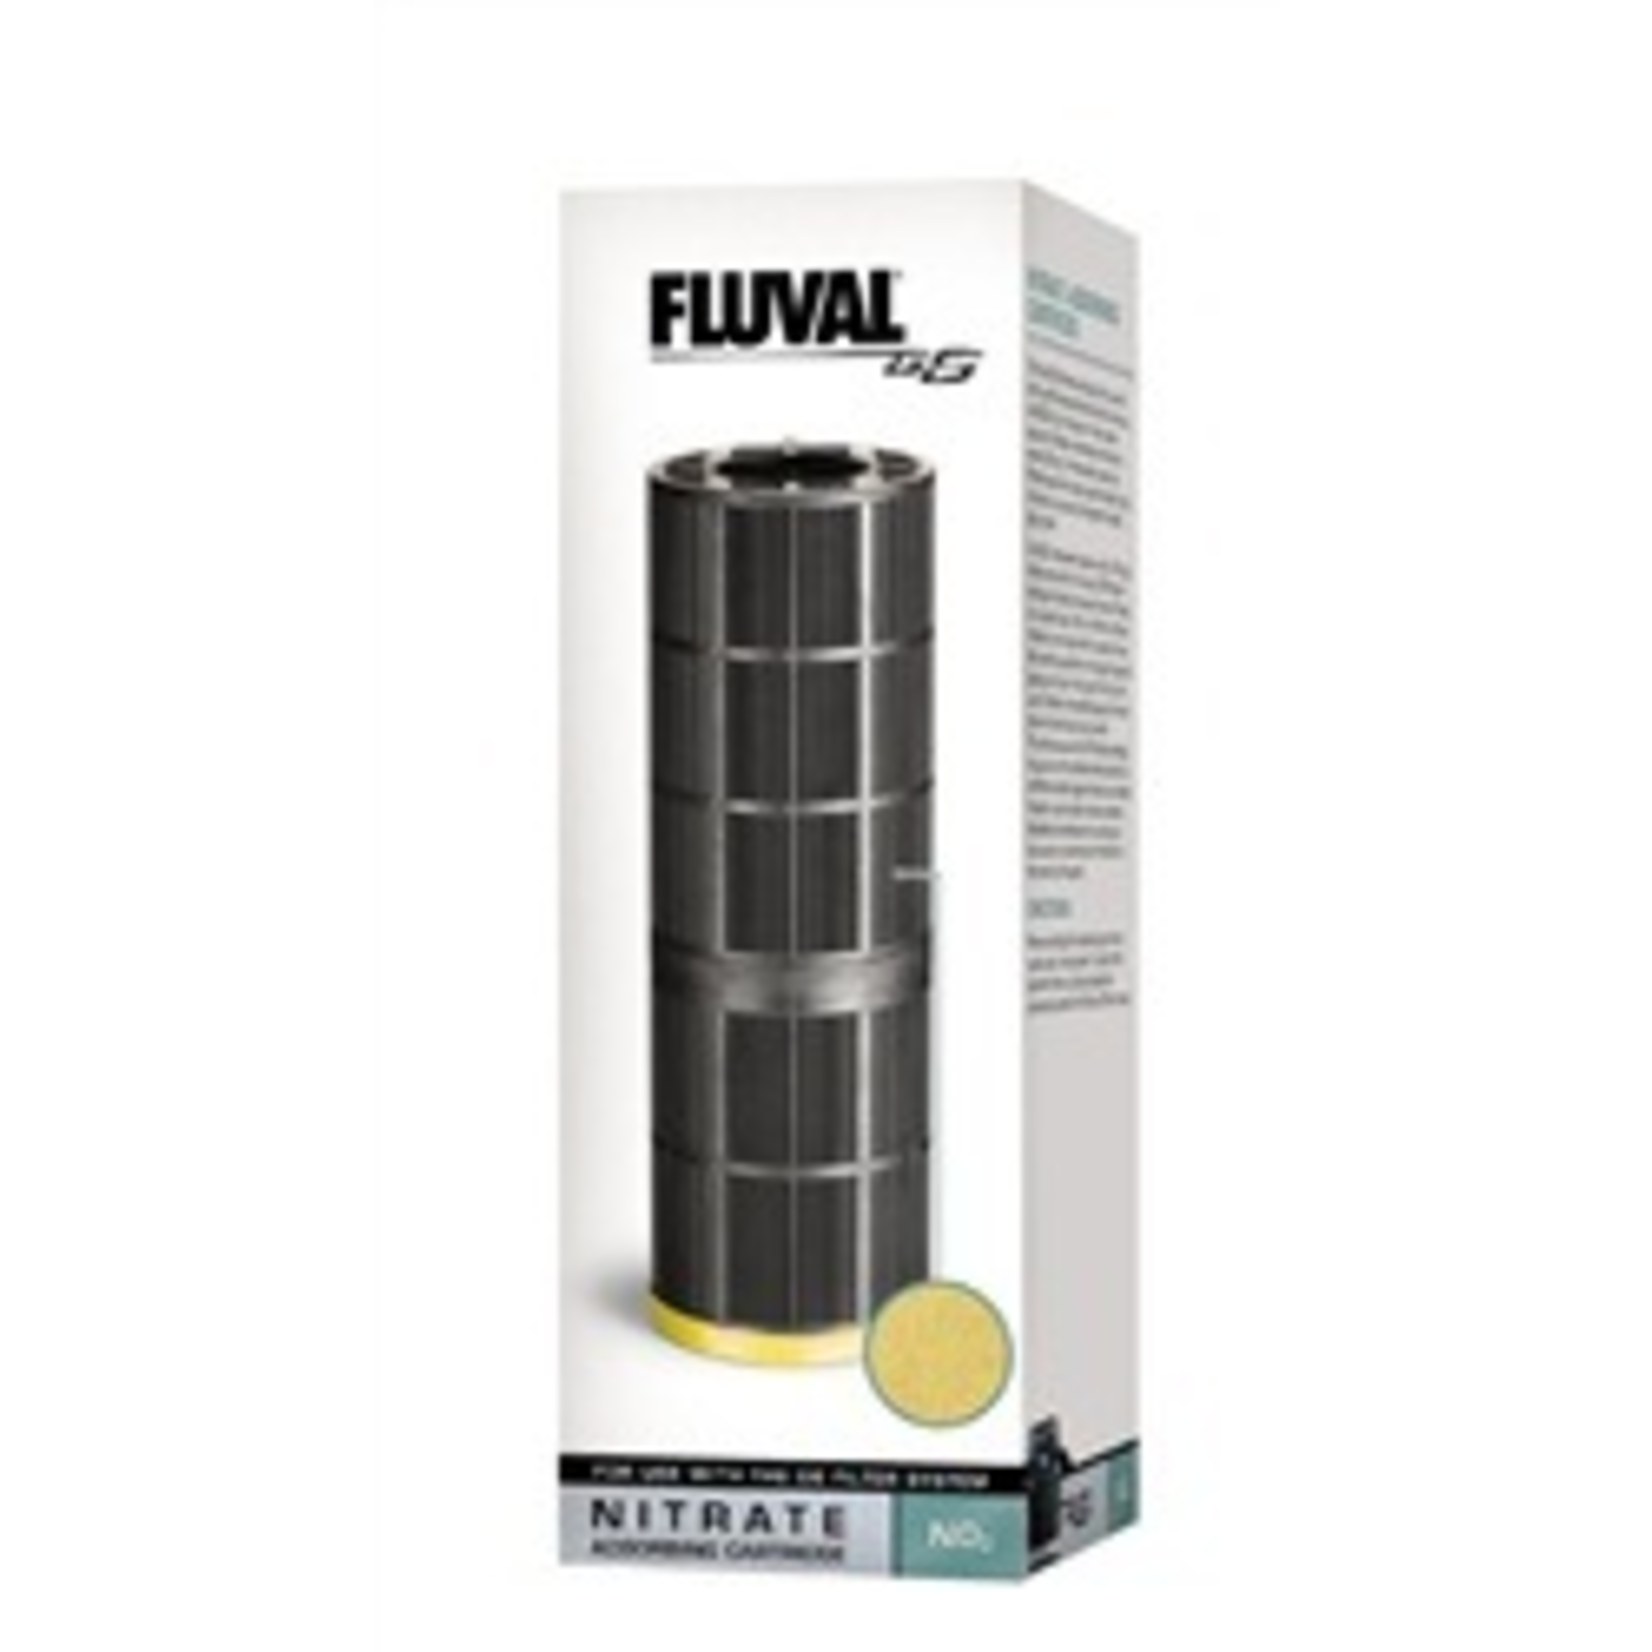 FLUVAL (D) Fluval G6 Nitrate Cartridge